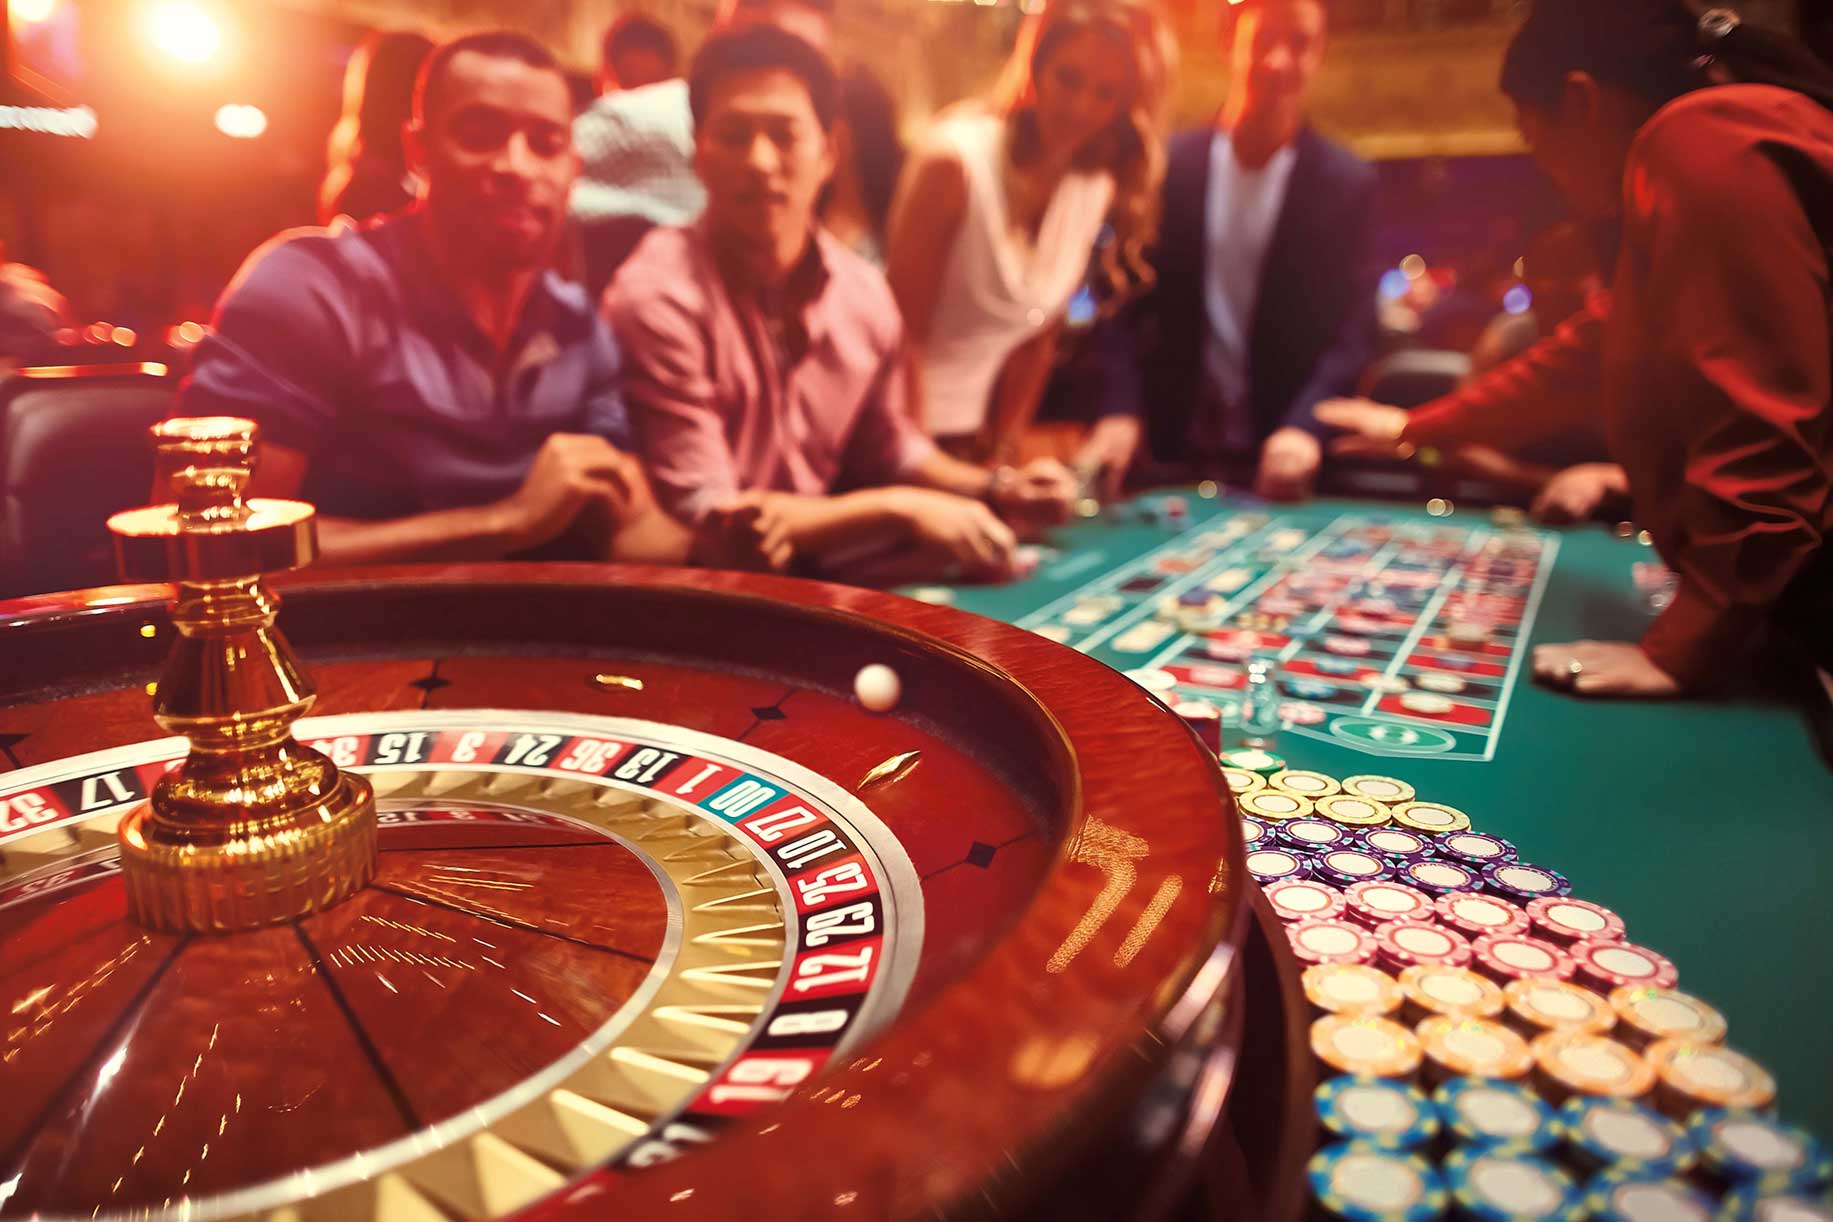  Người Việt Nam có đủ năng lực tài chính mới được phép vào chơi casino. Ảnh minh họa: Ameristar